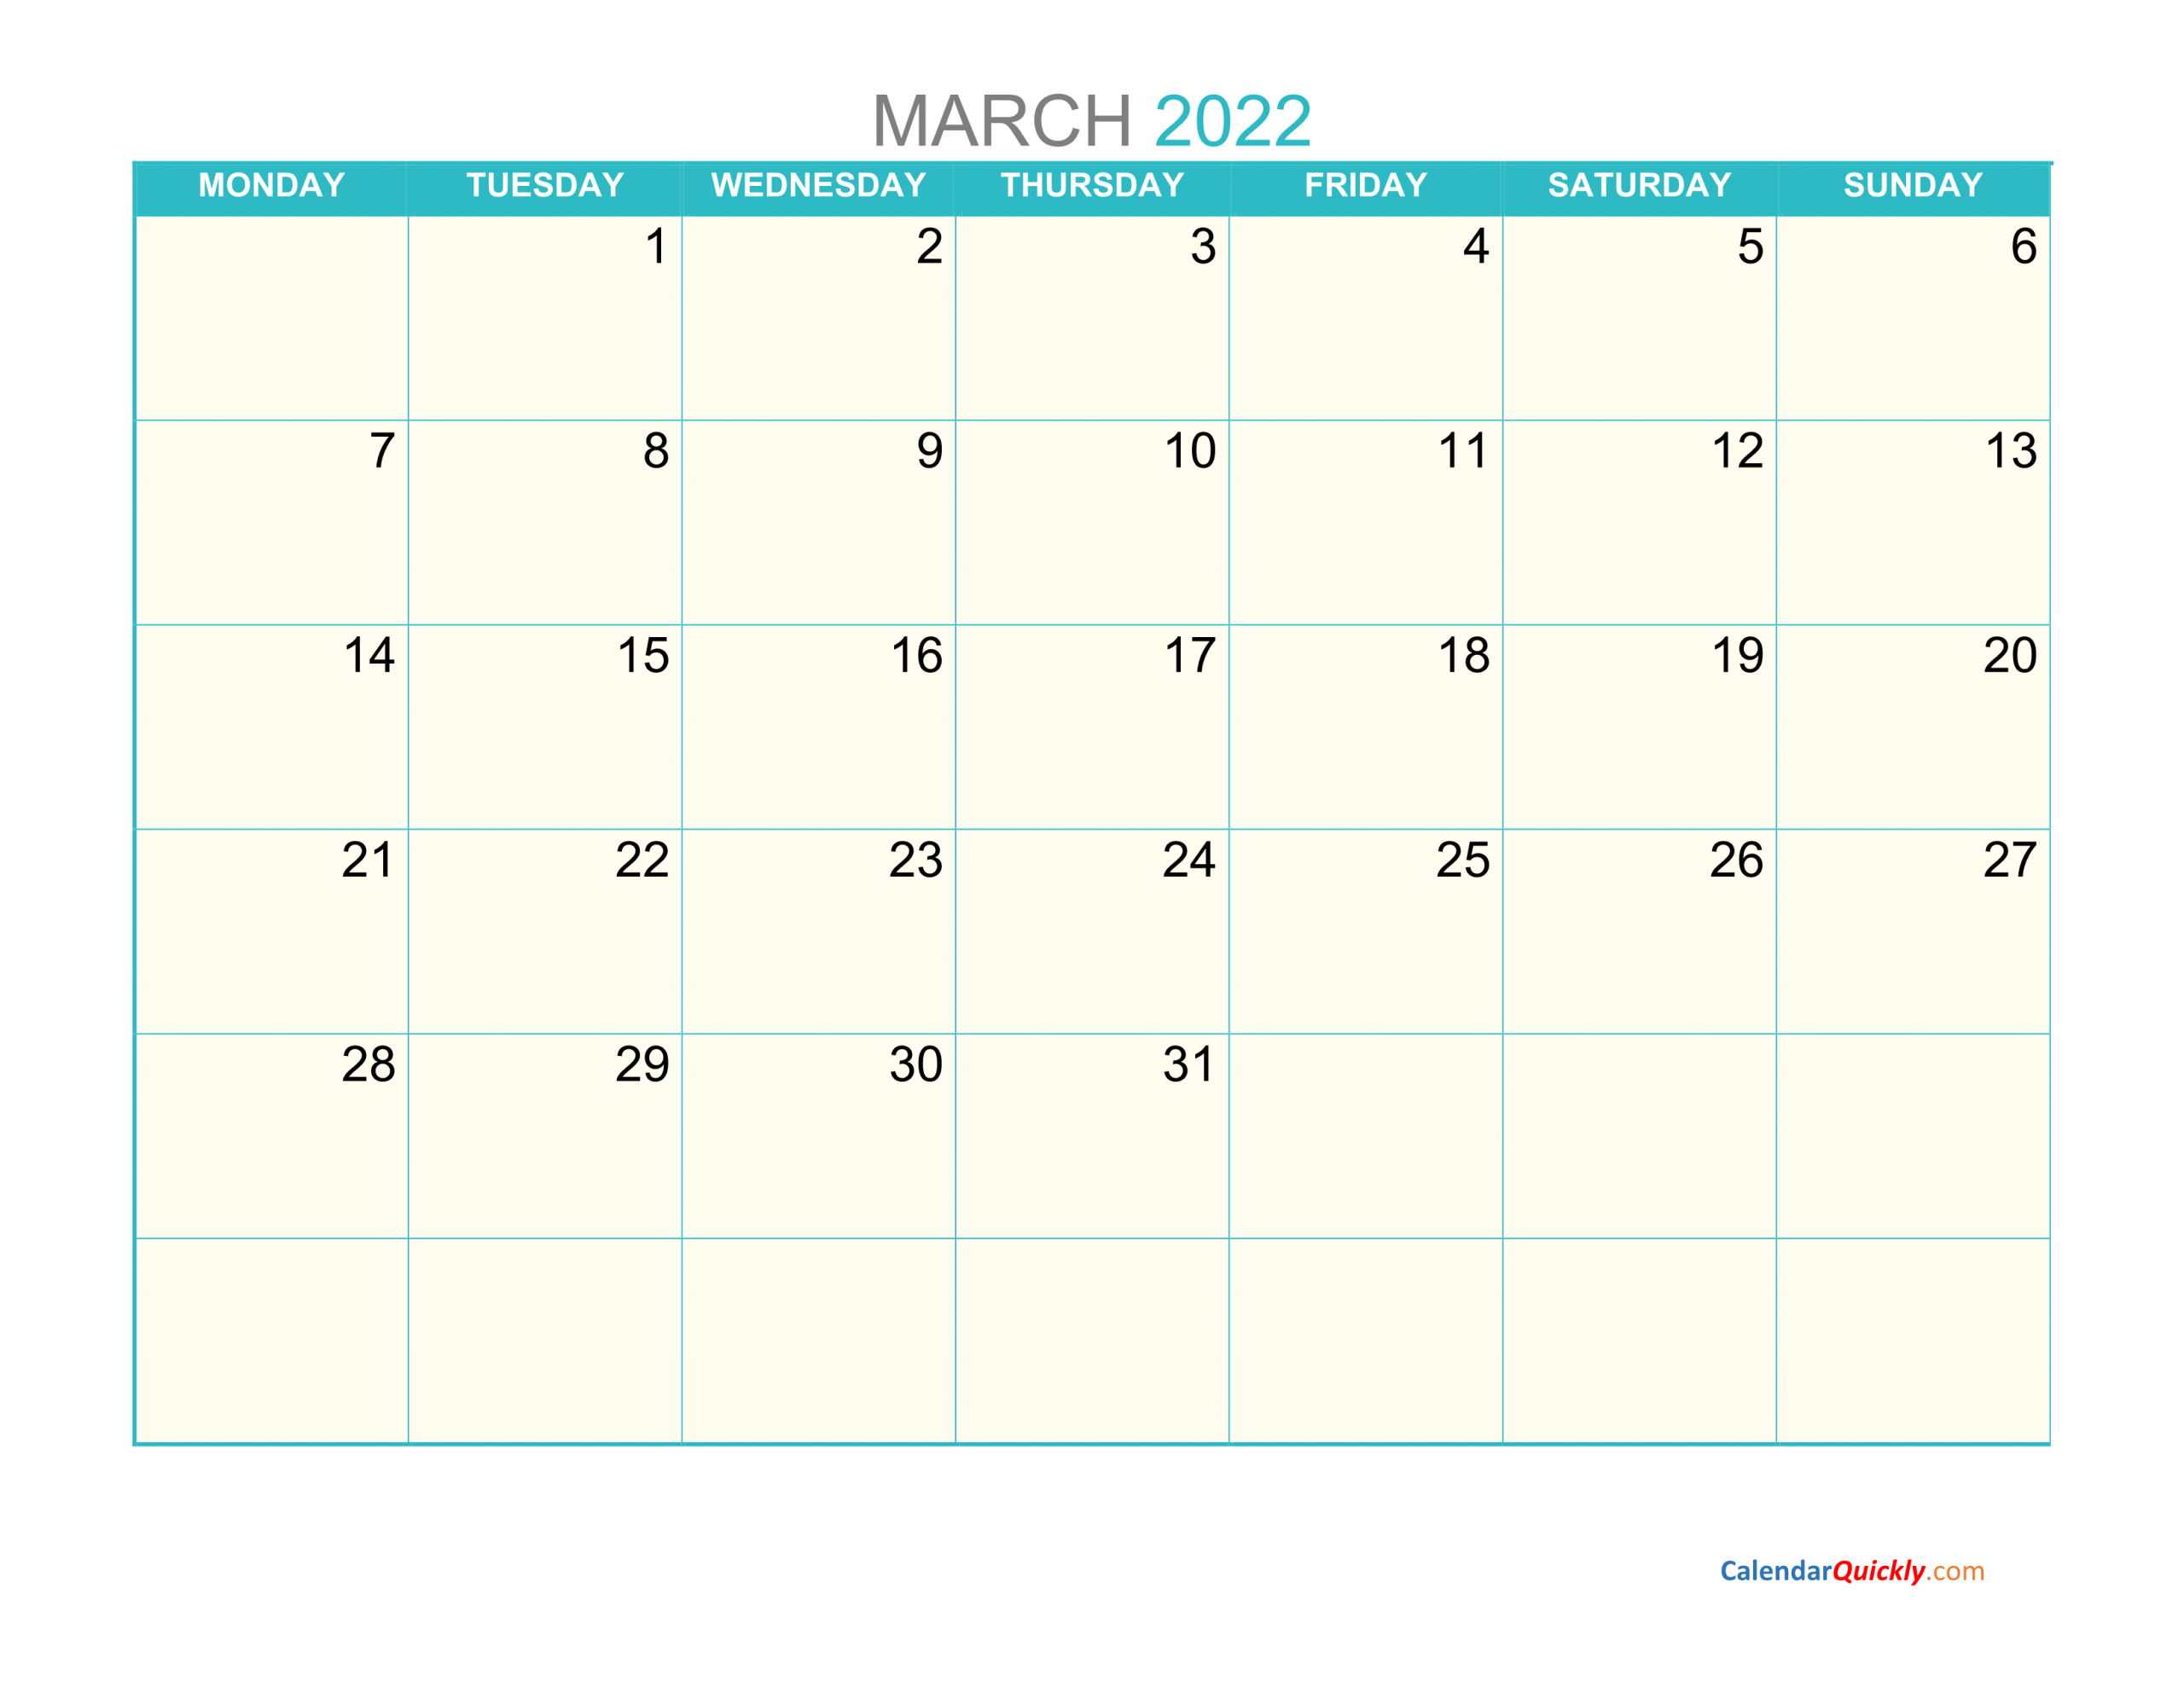 March Monday 2022 Calendar Printable Calendar Quickly 1